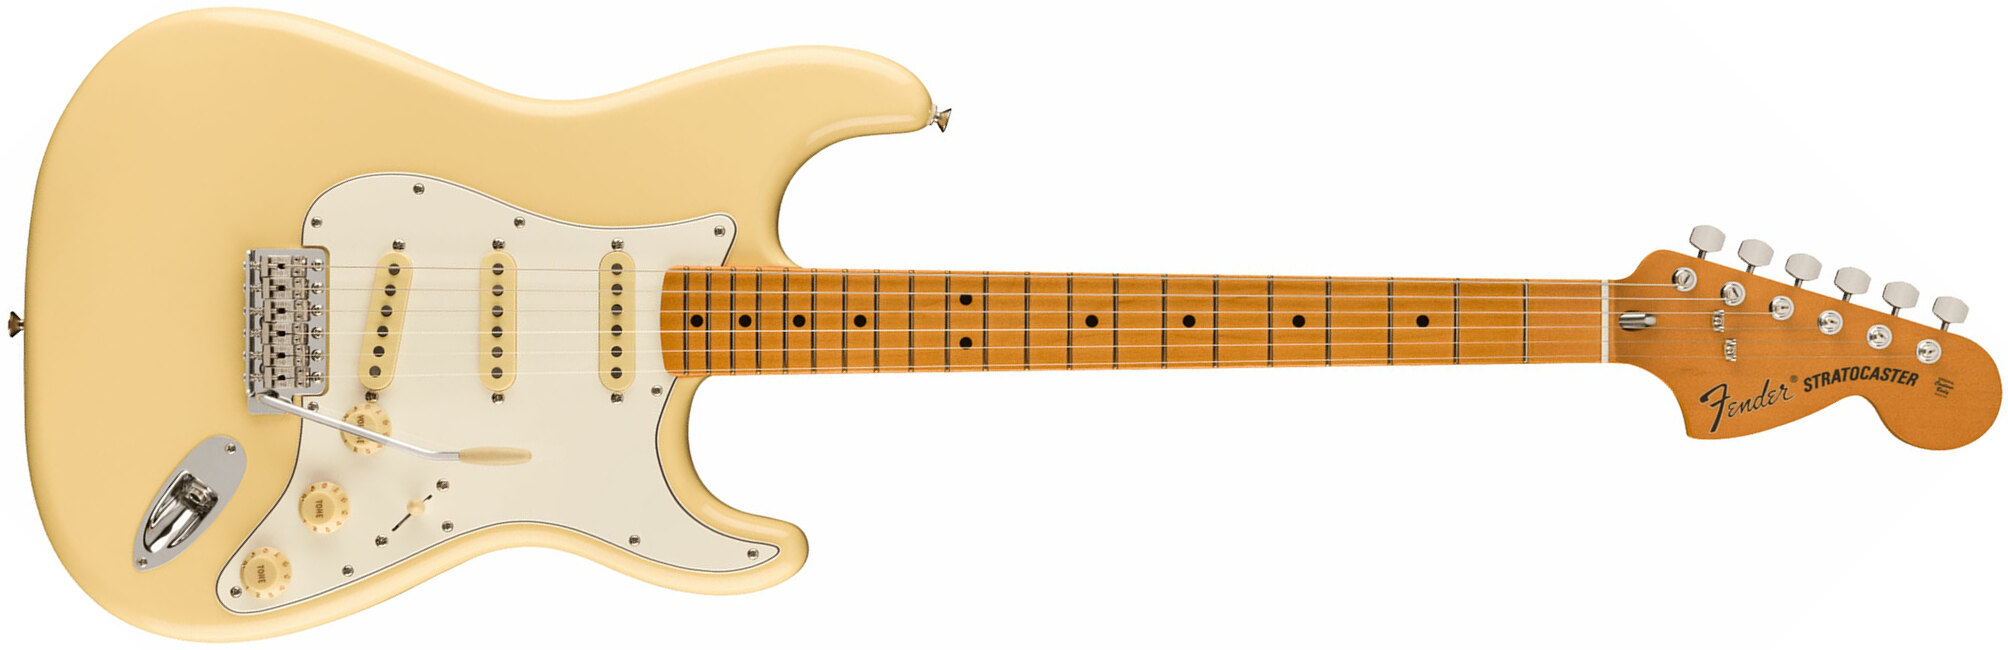 Fender Strat 70s Vintera 2 Mex 3s Trem Mn - Vintage White - Guitarra eléctrica con forma de str. - Main picture